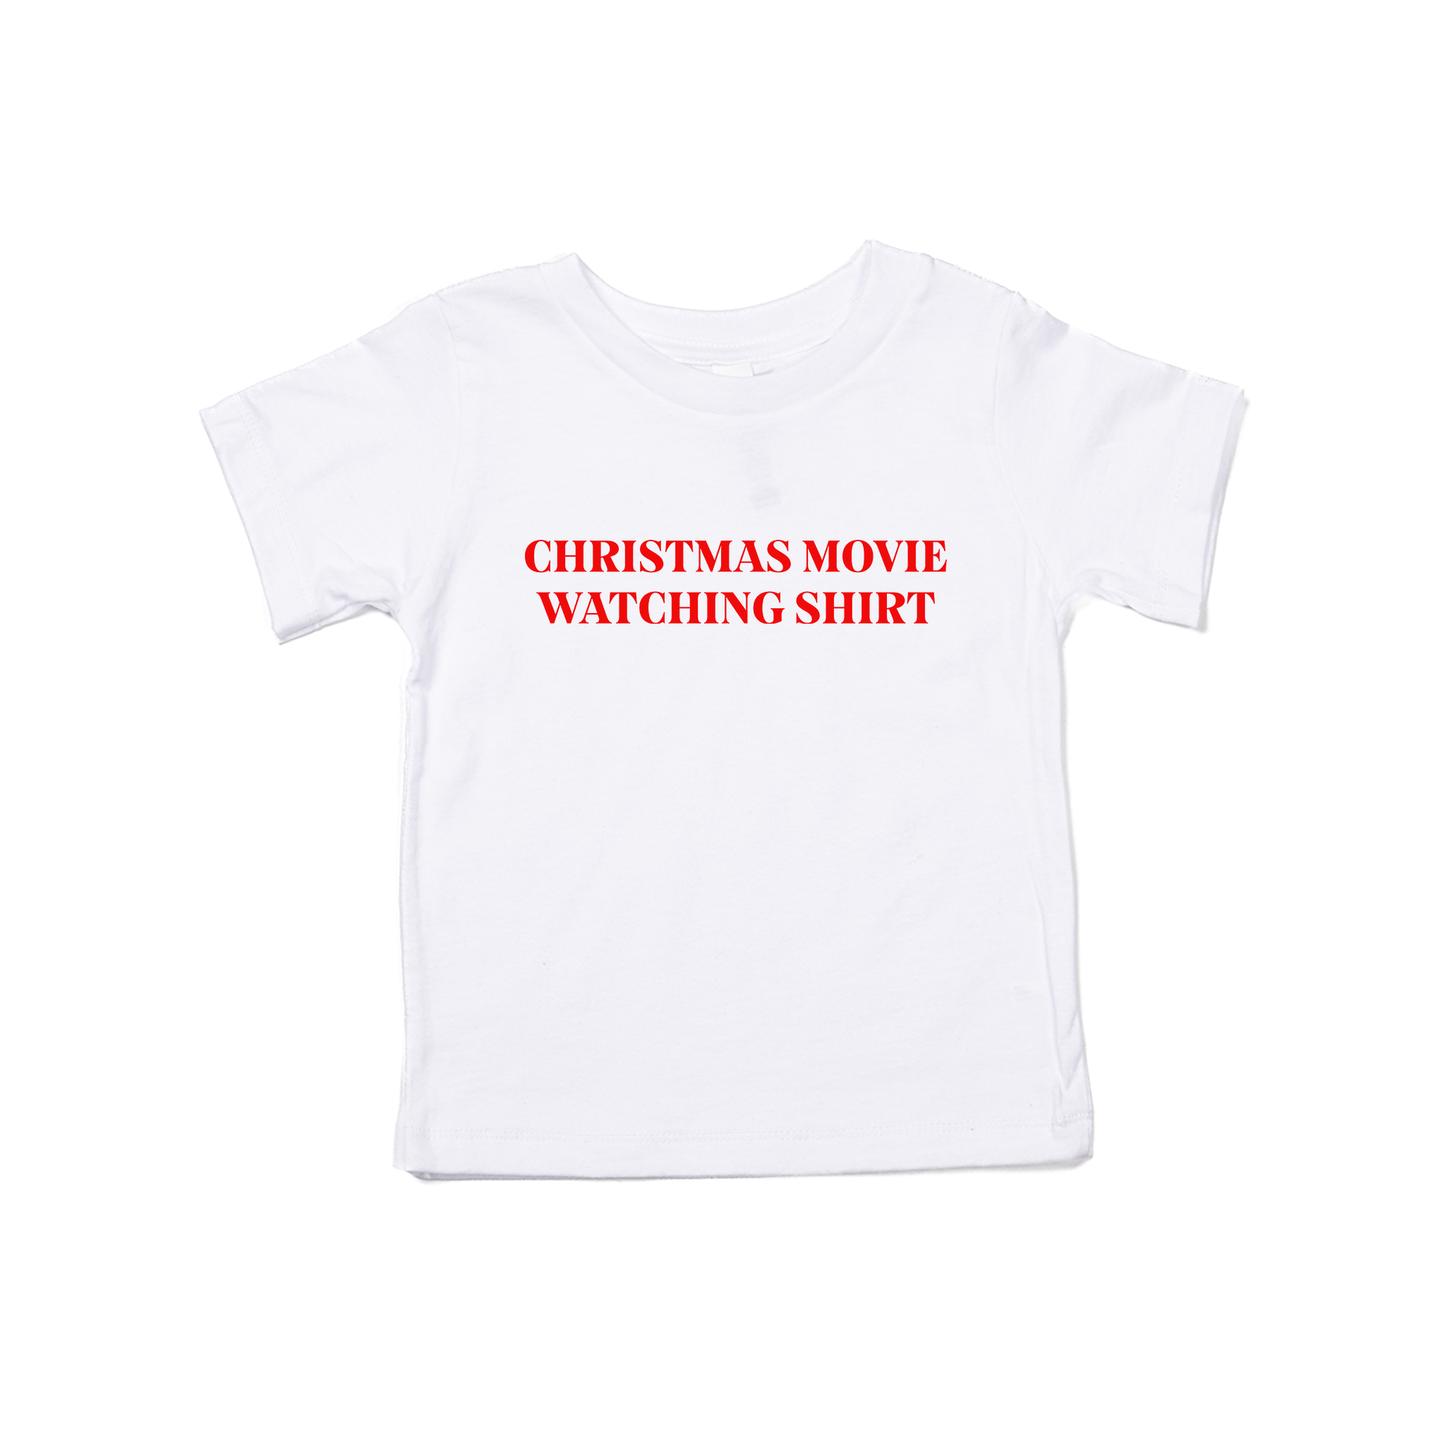 Christmas Movie Watching Shirt (Red) - Kids Tee (White)